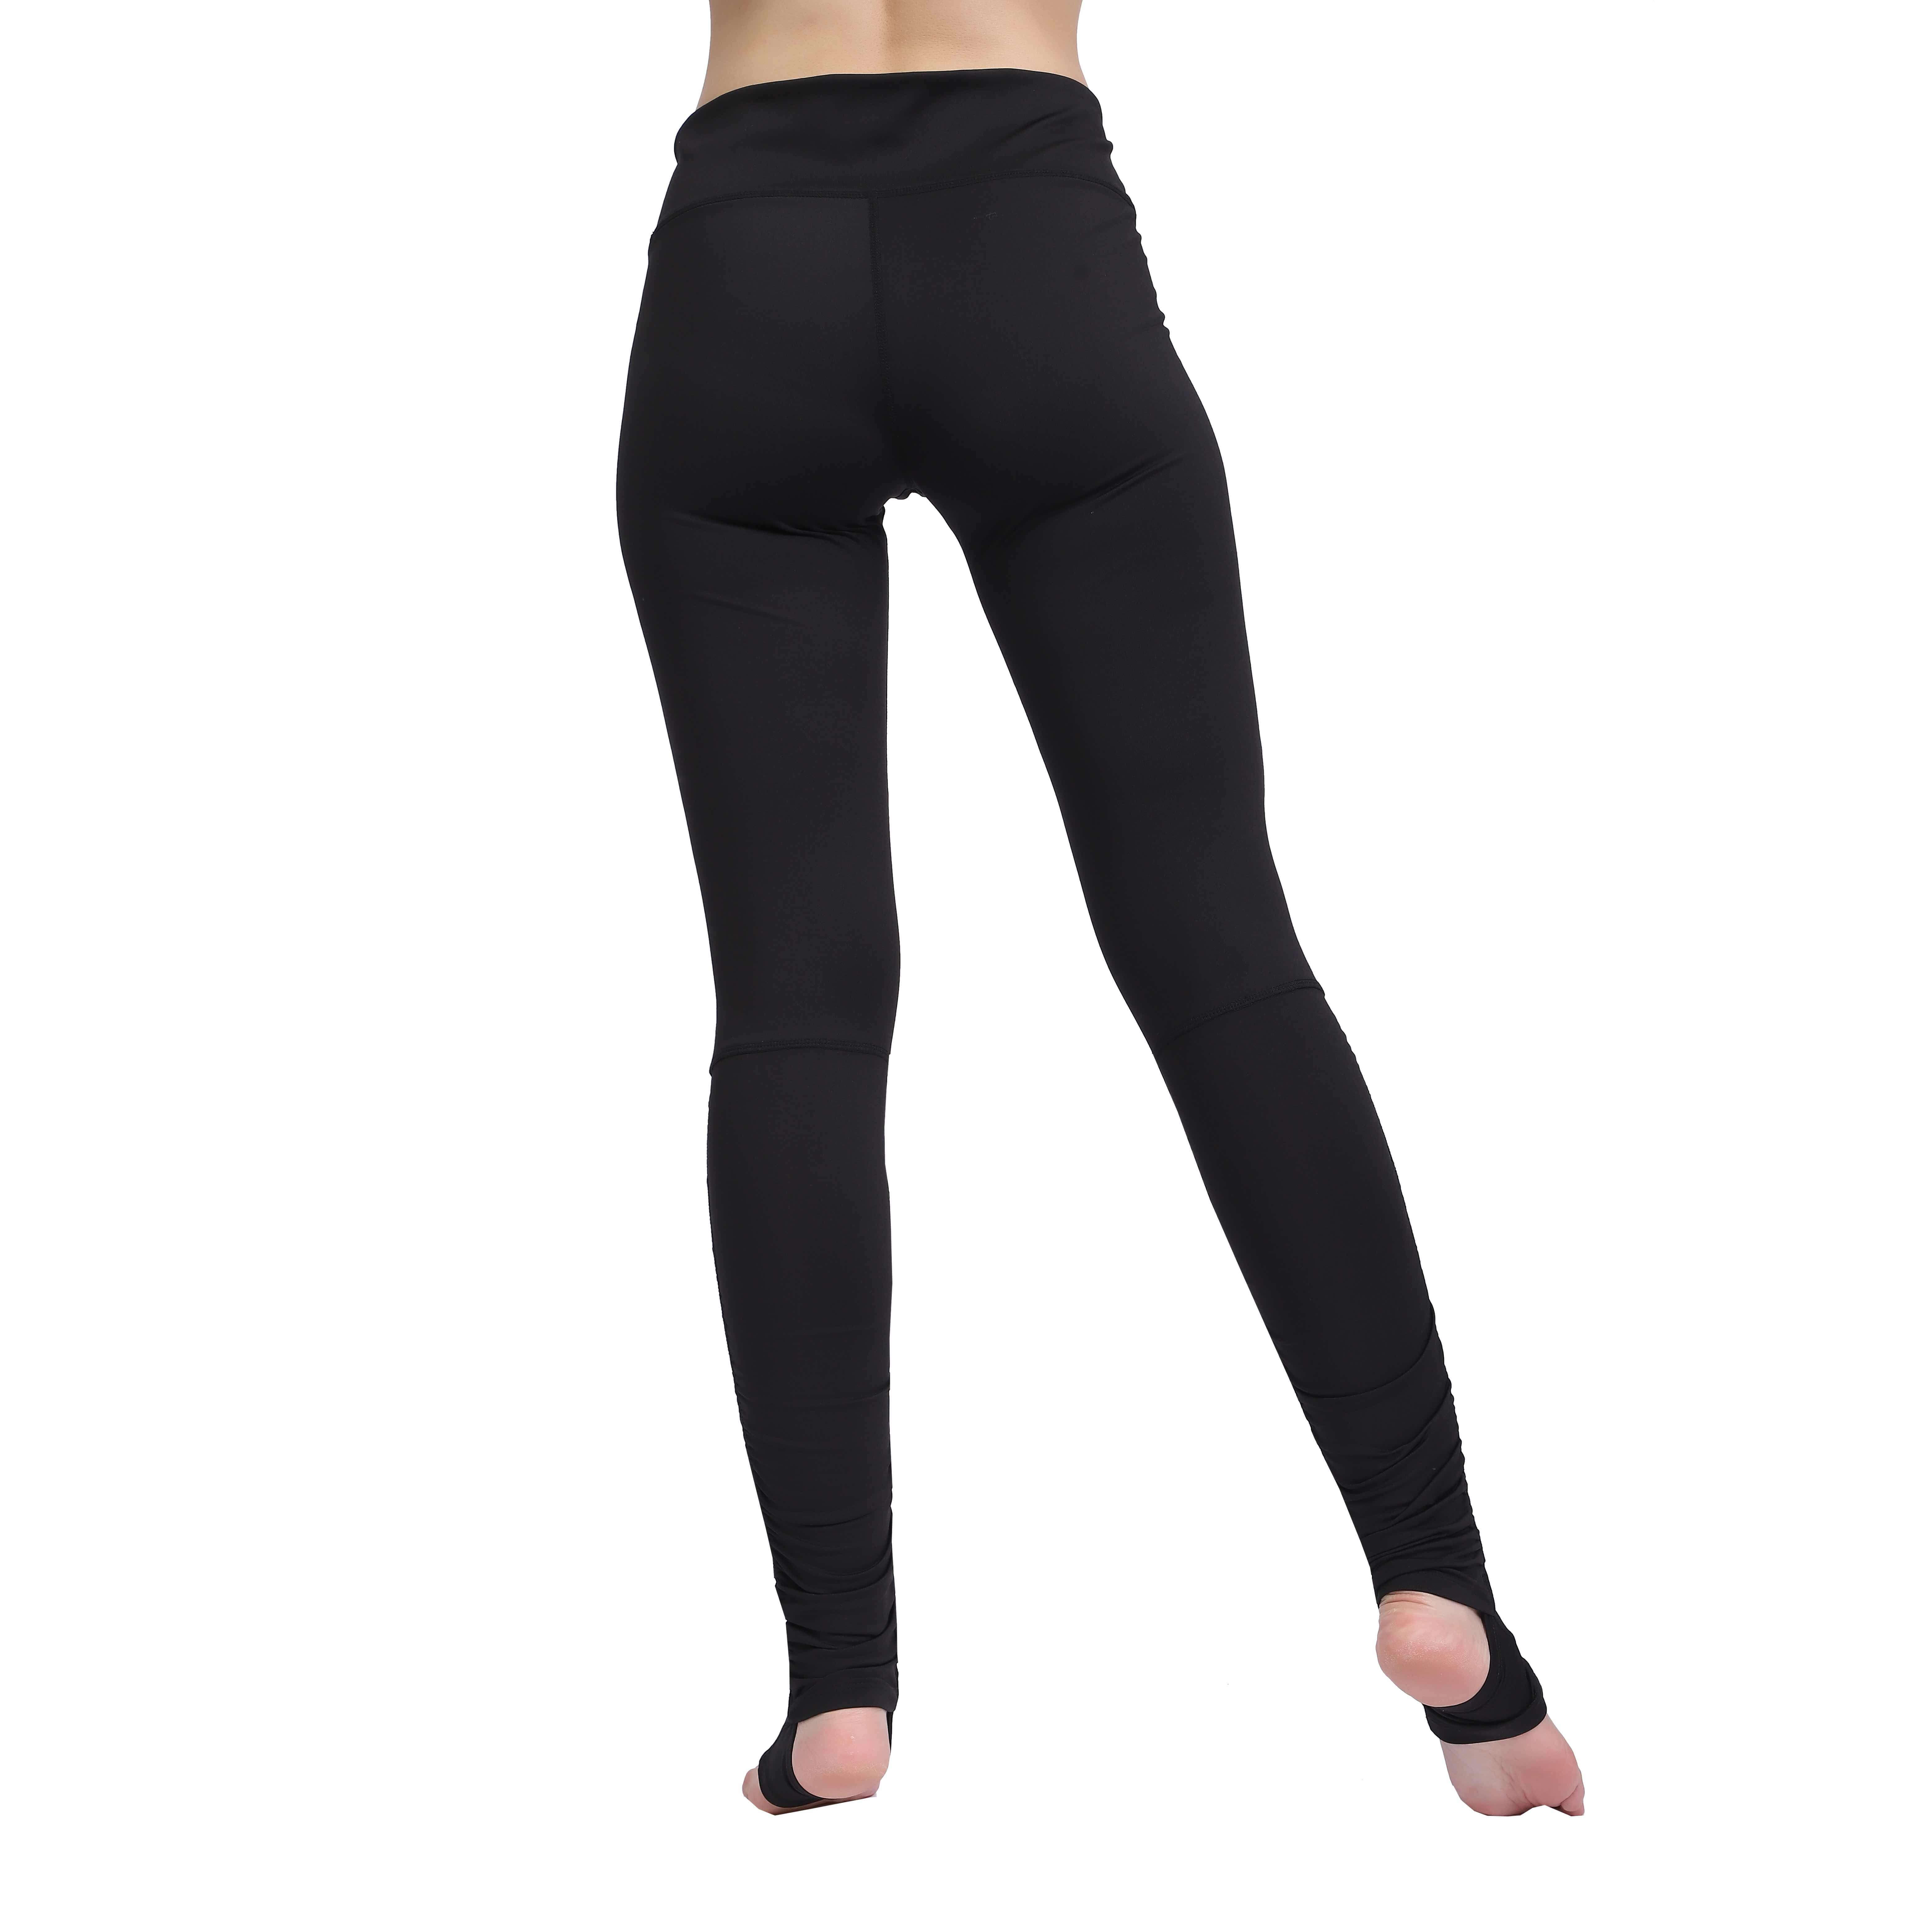 Lange Yogahosen für Damen, Sportleggings mit Zwickel im Schritt, Laufhose, hohe Taille, Stretch-Fitnesshose